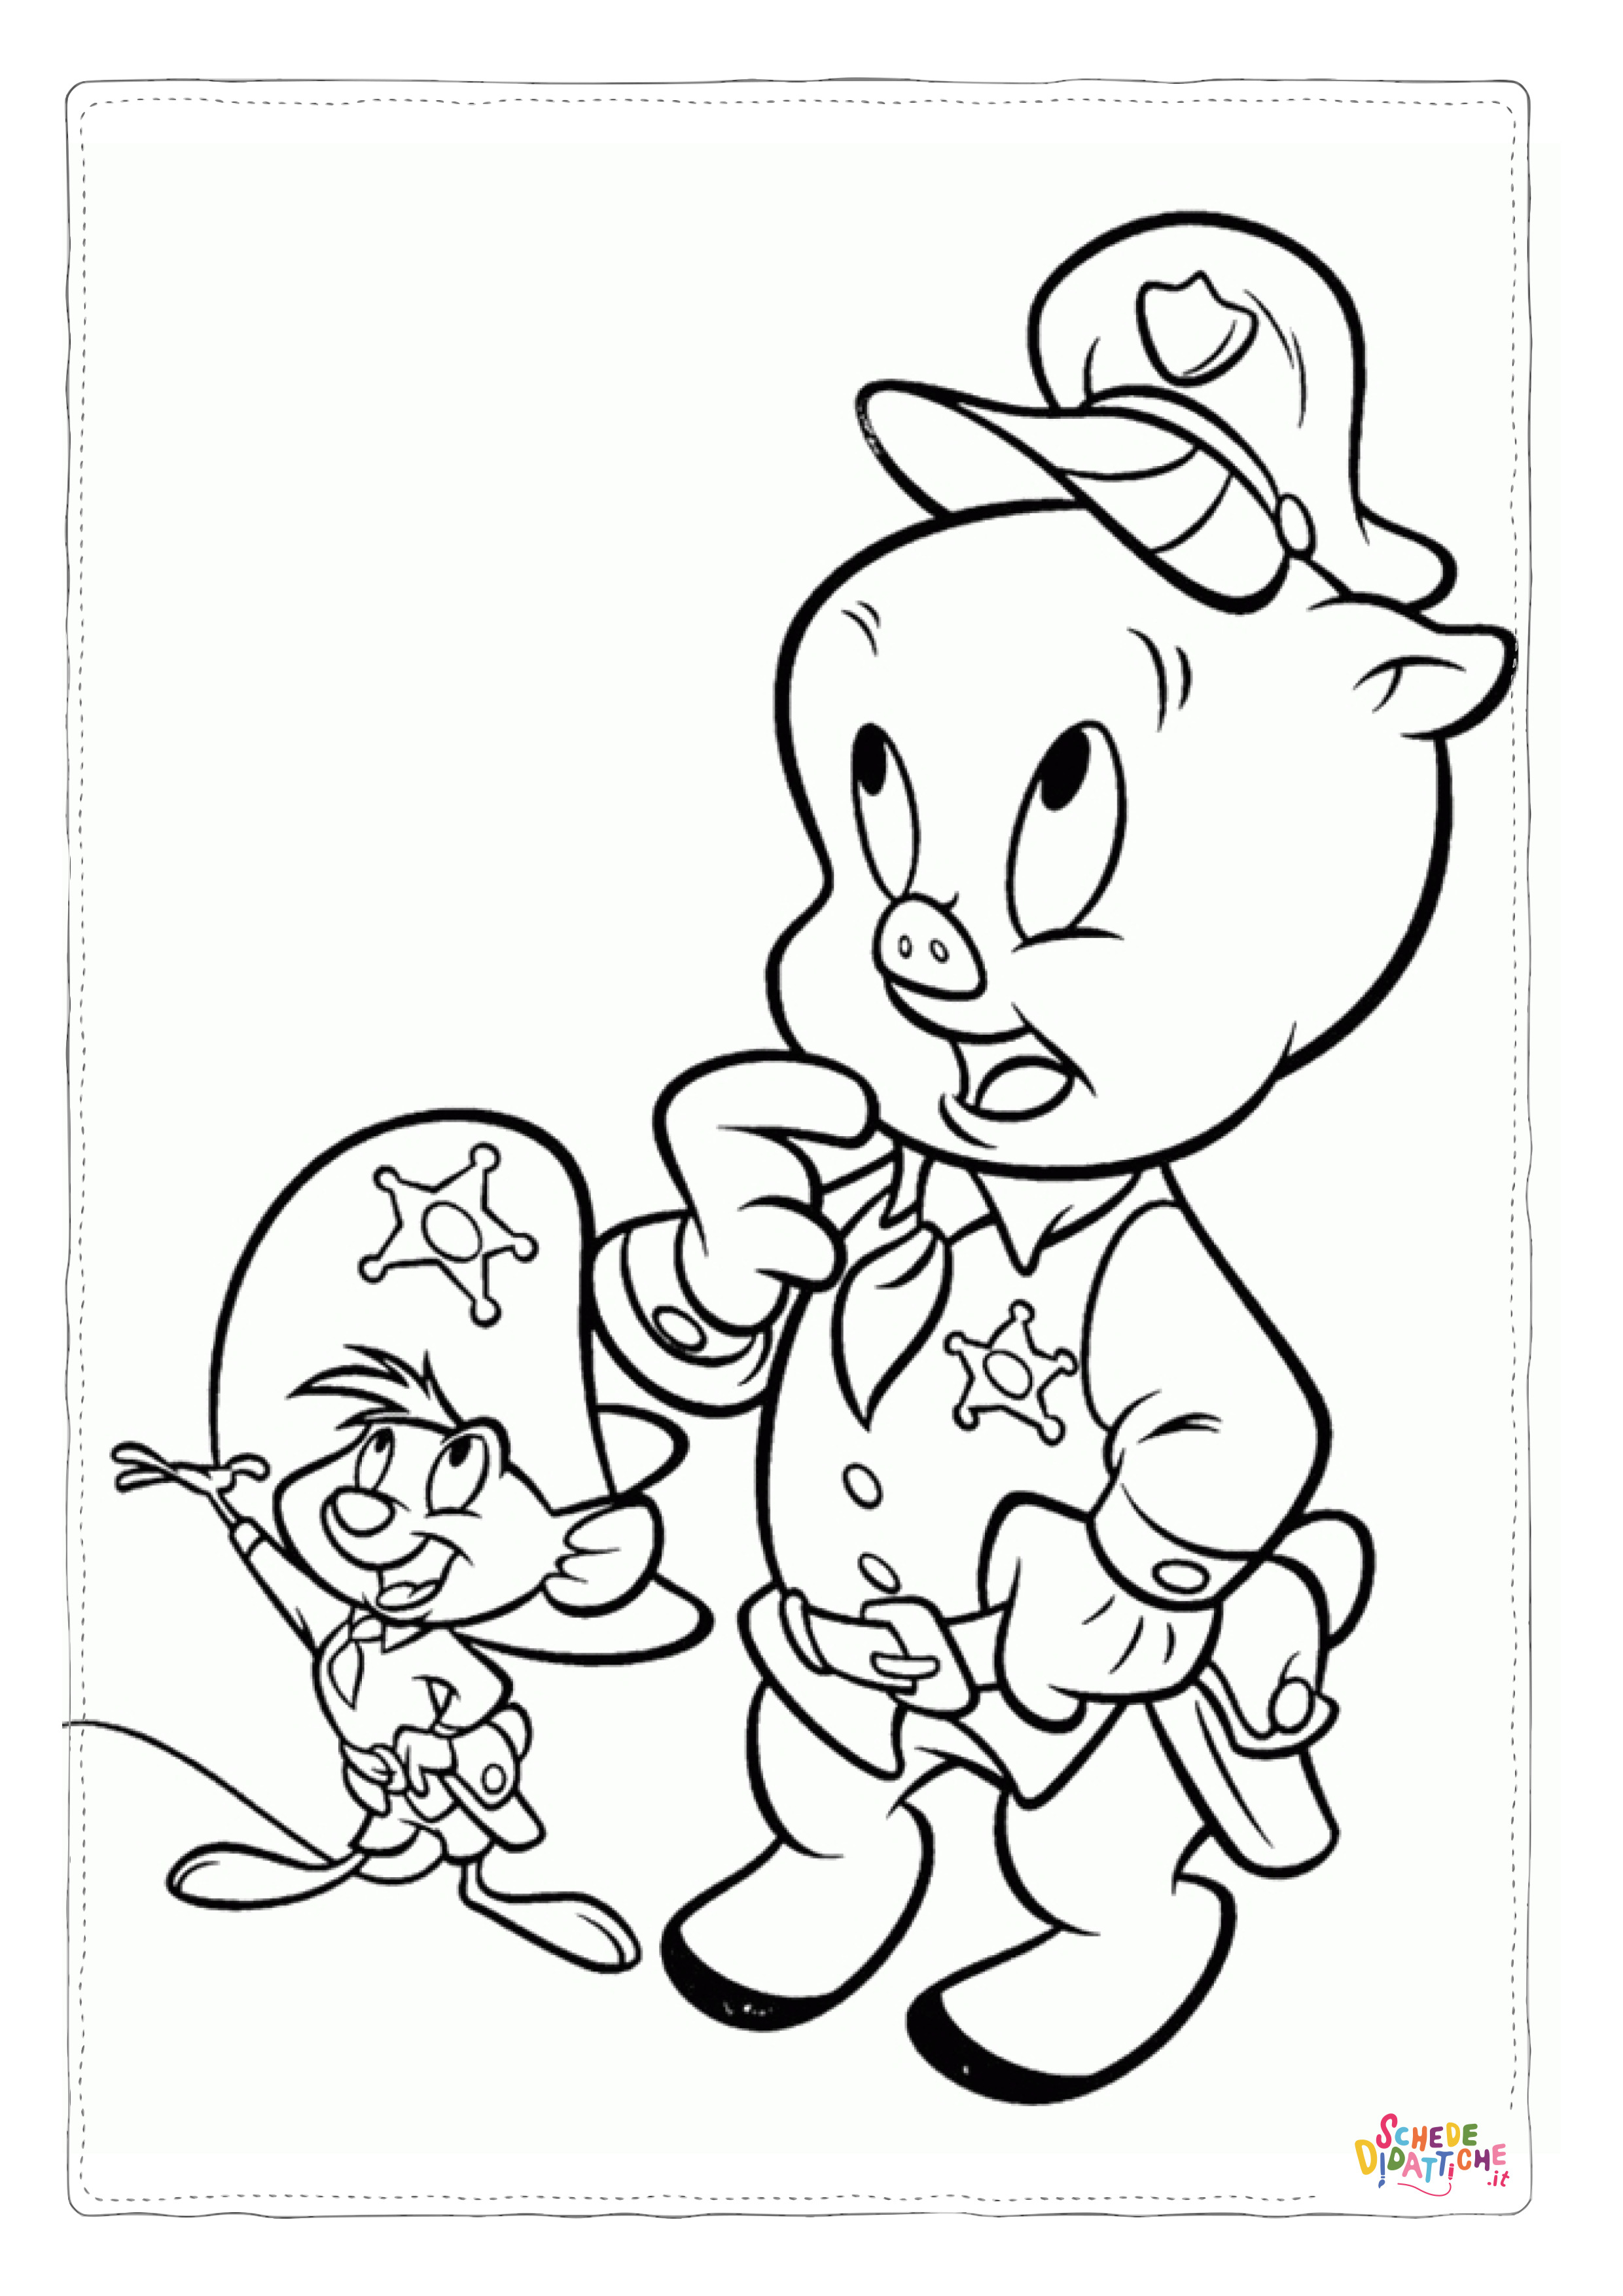 Disegno di Porky Pig da stampare e colorare 1